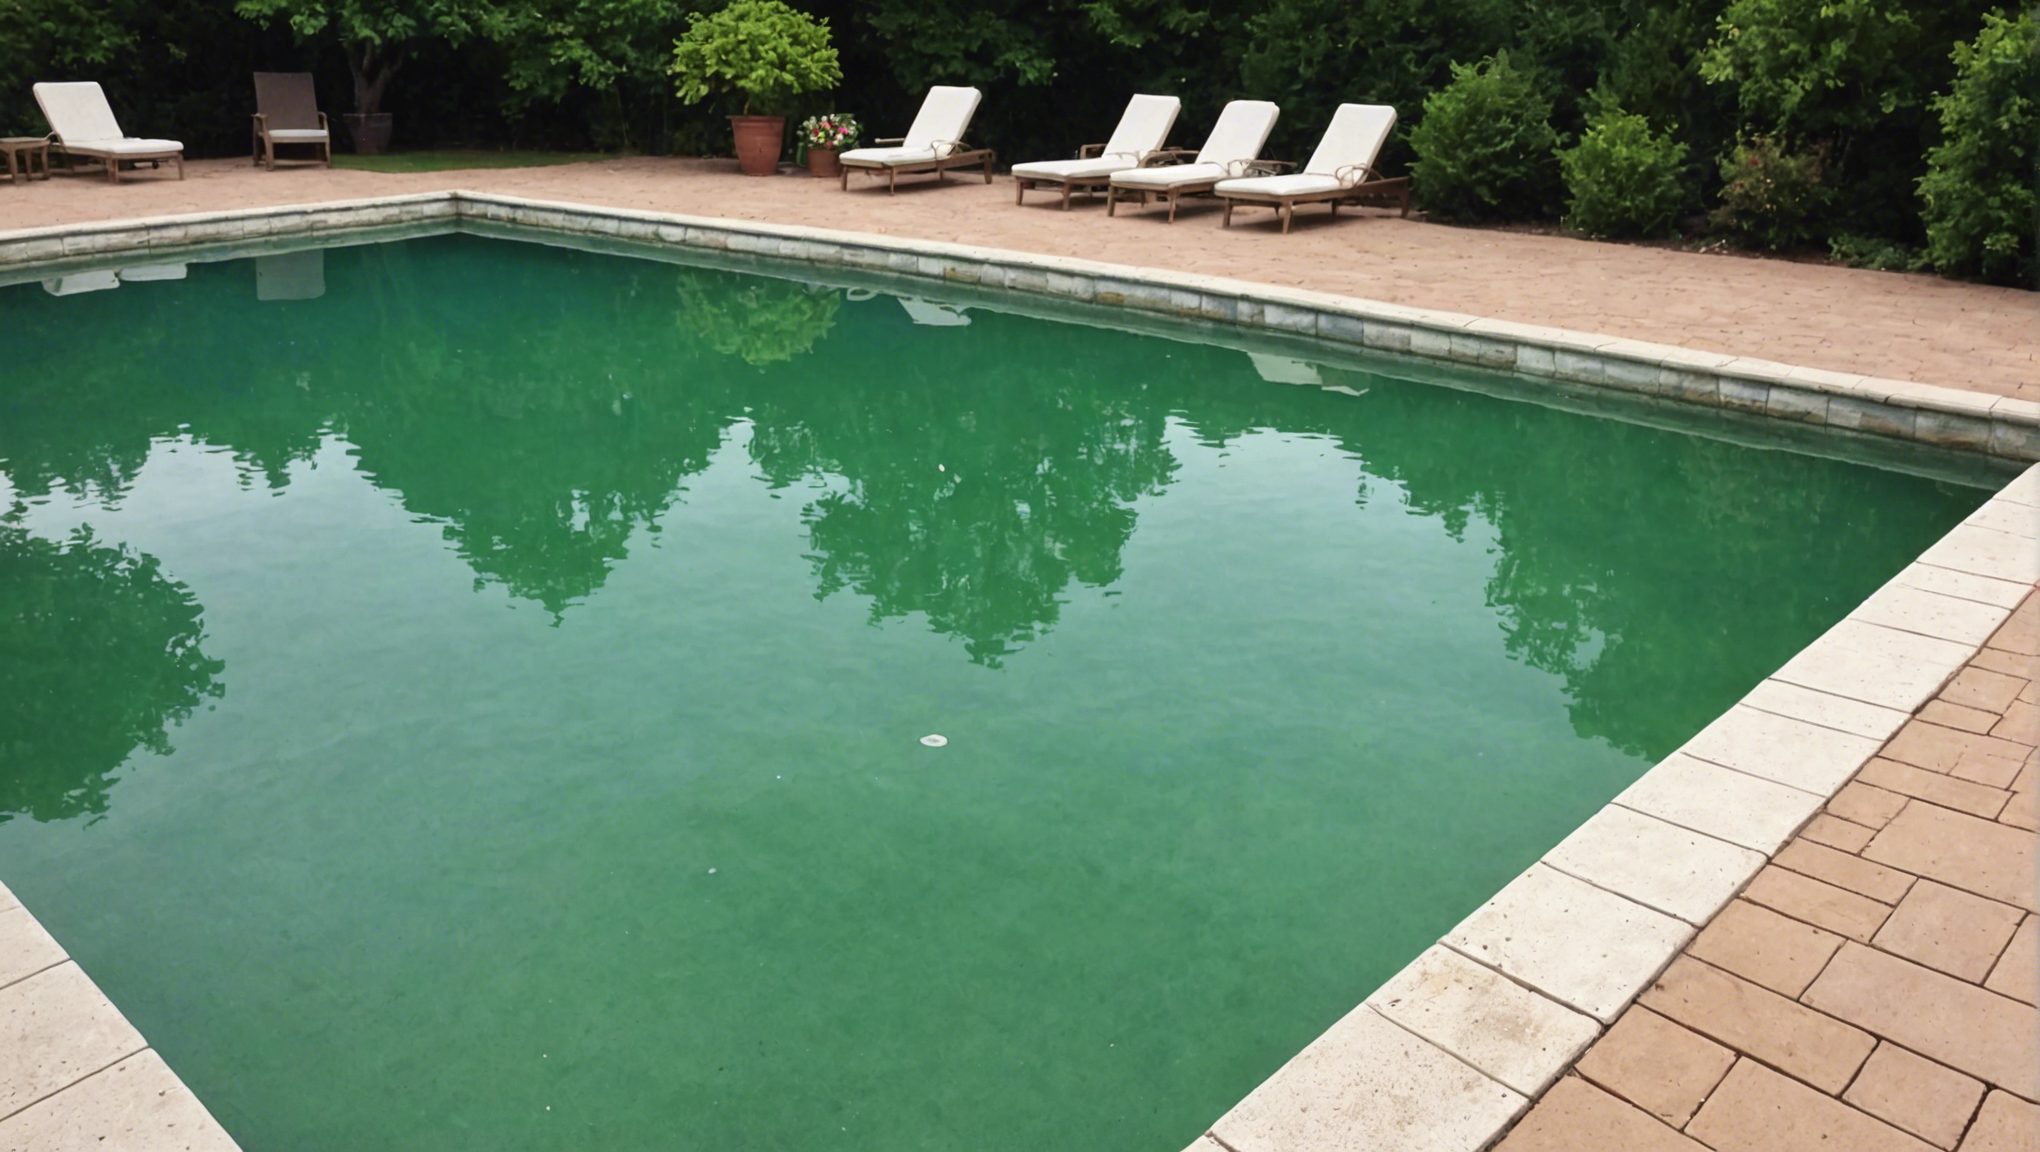 découvrez à quel moment il est essentiel d'appliquer un traitement anti-algues dans une piscine pour garder une eau claire et saine tout au long de la saison estivale.